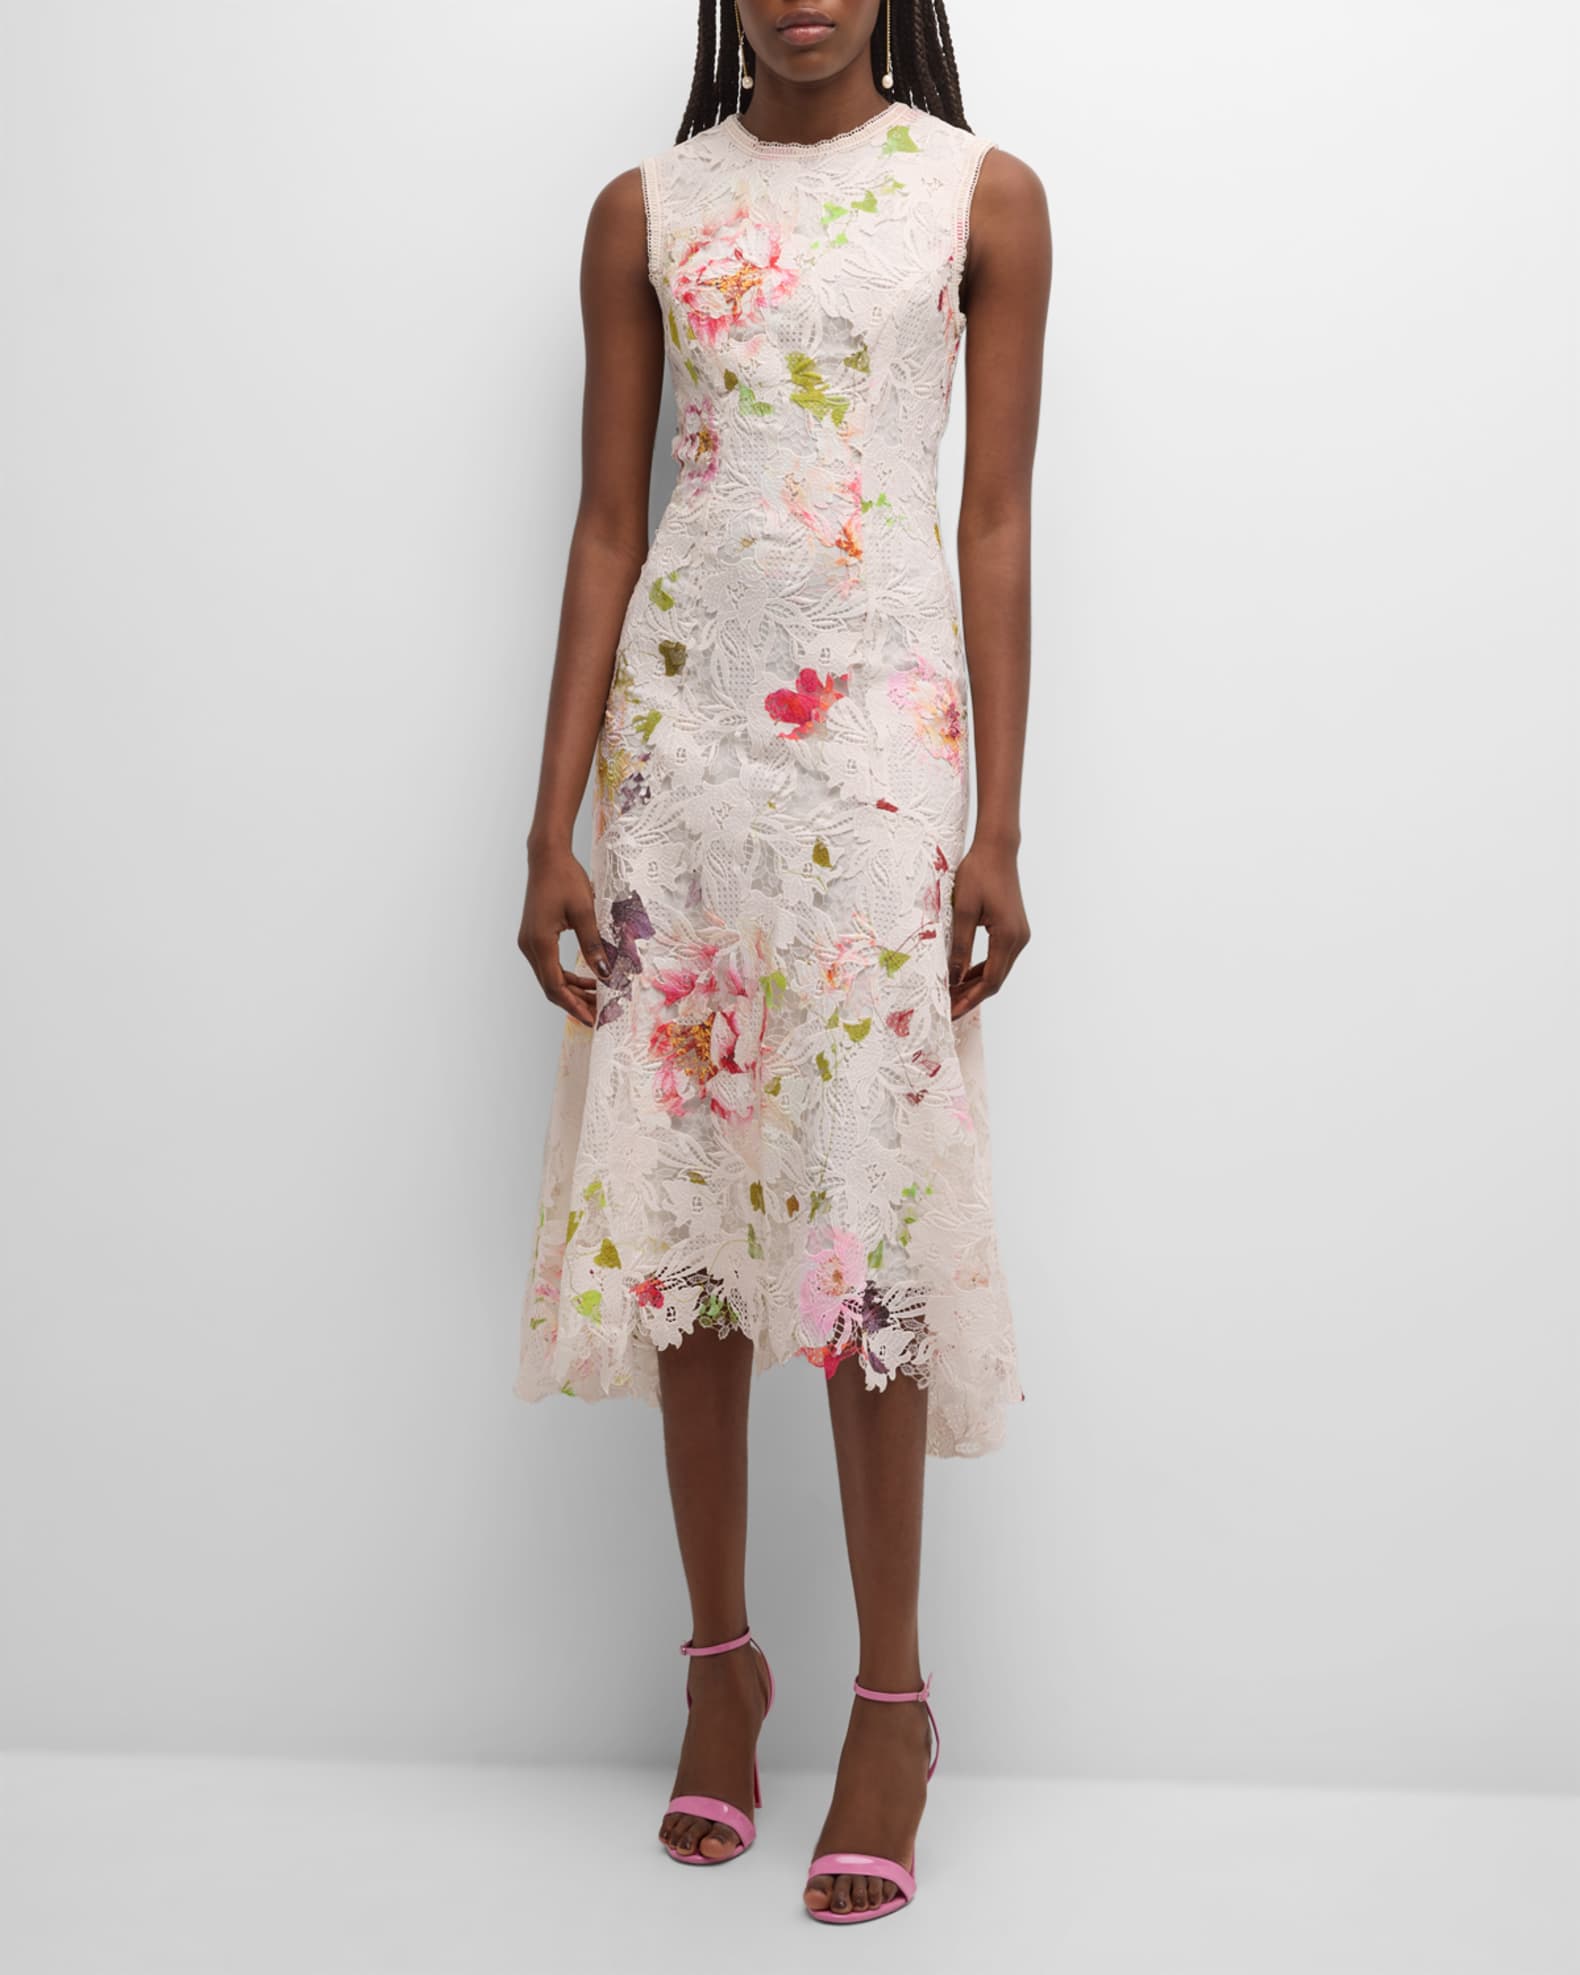 Monique Lhuillier Floral Printed Lace Midi Dress | Neiman Marcus